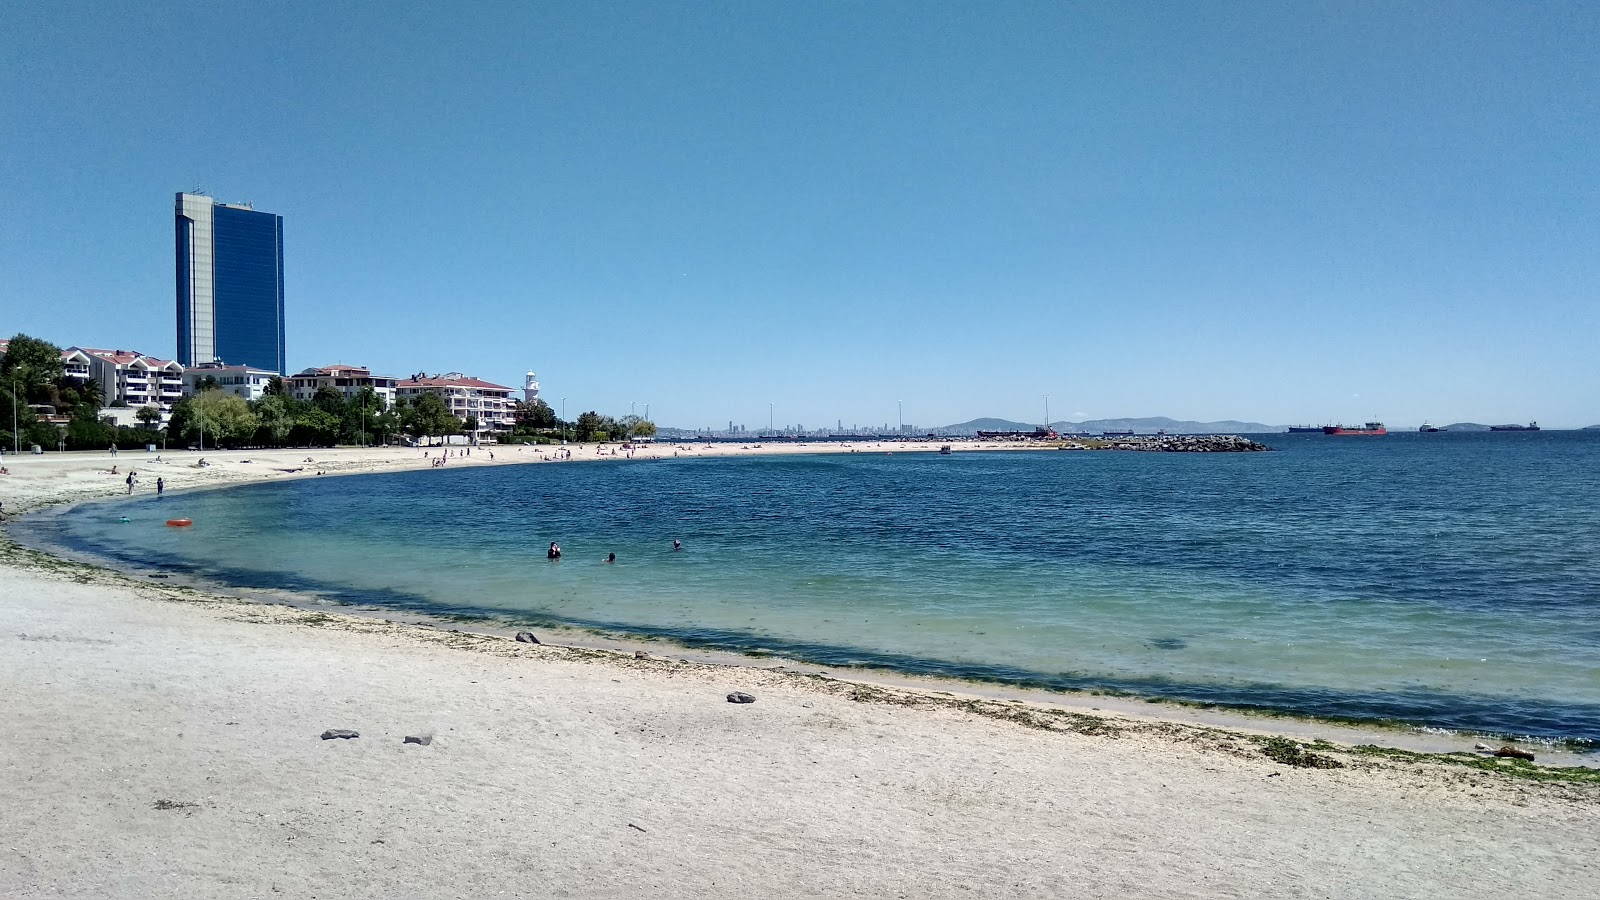 Bakirkoy beach'in fotoğrafı kahverengi kum yüzey ile